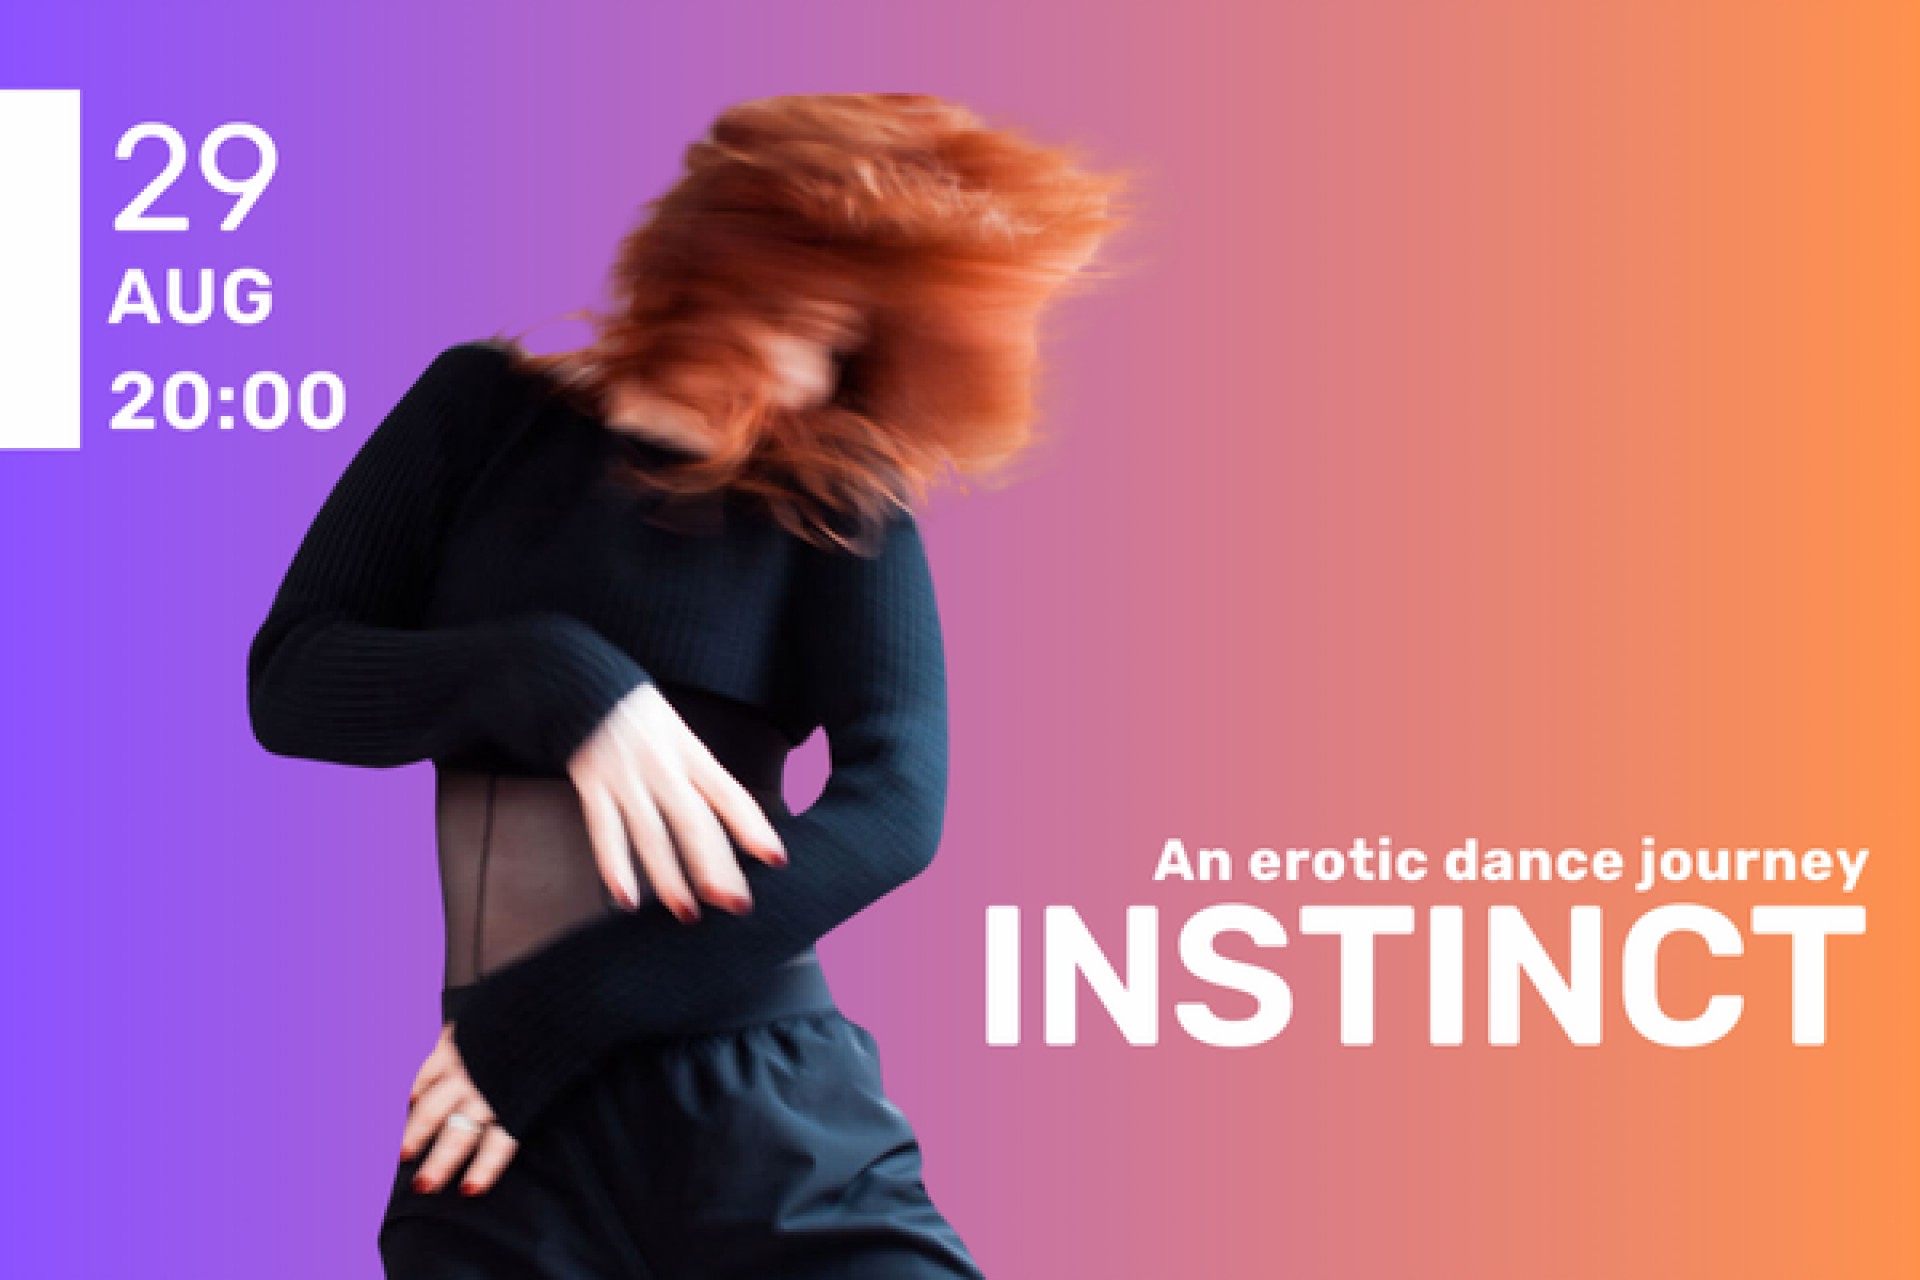 INSTINCT: An erotic dance journey